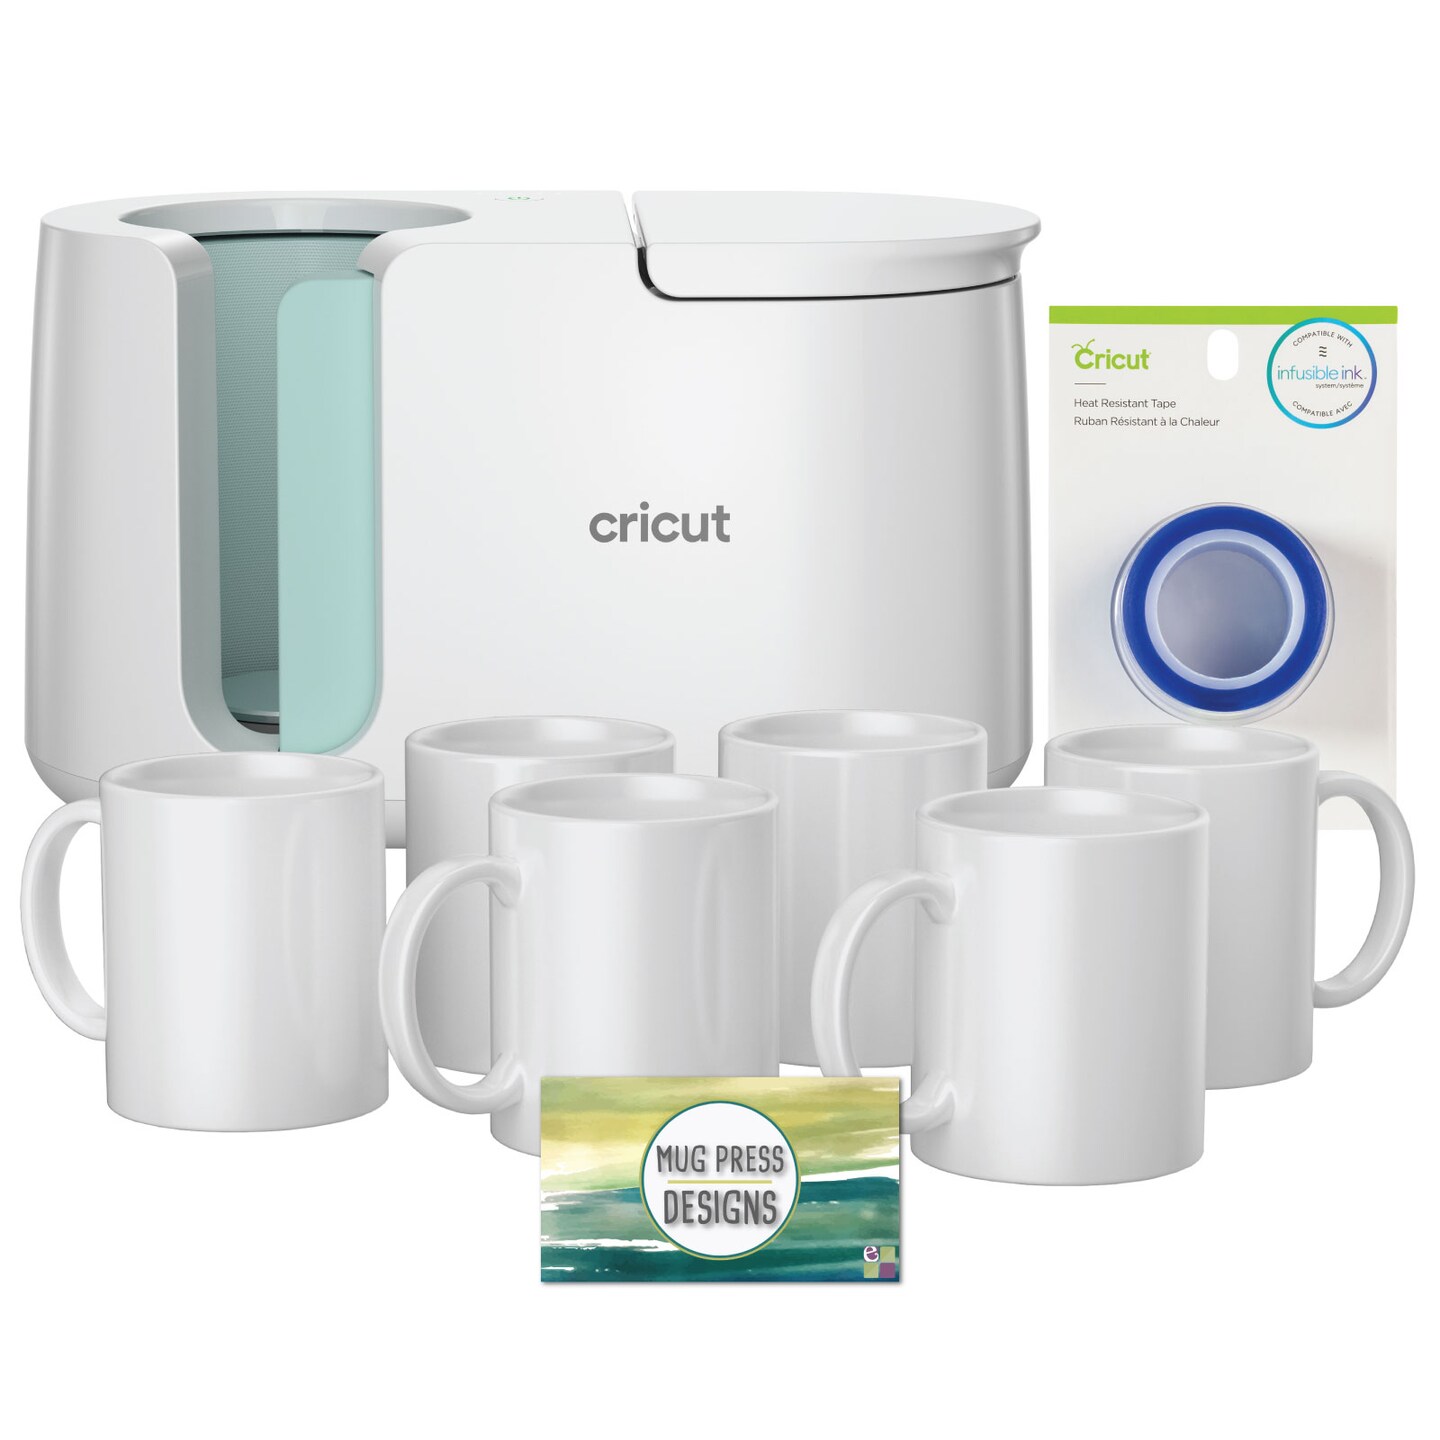 Cricut Blank Mug, Ceramic-Coated, Dishwasher & Microwave Safe Mug to  Decorate, Cricut Mug Press & Infusible Ink Compatible,12 Oz Sublimation  Mug